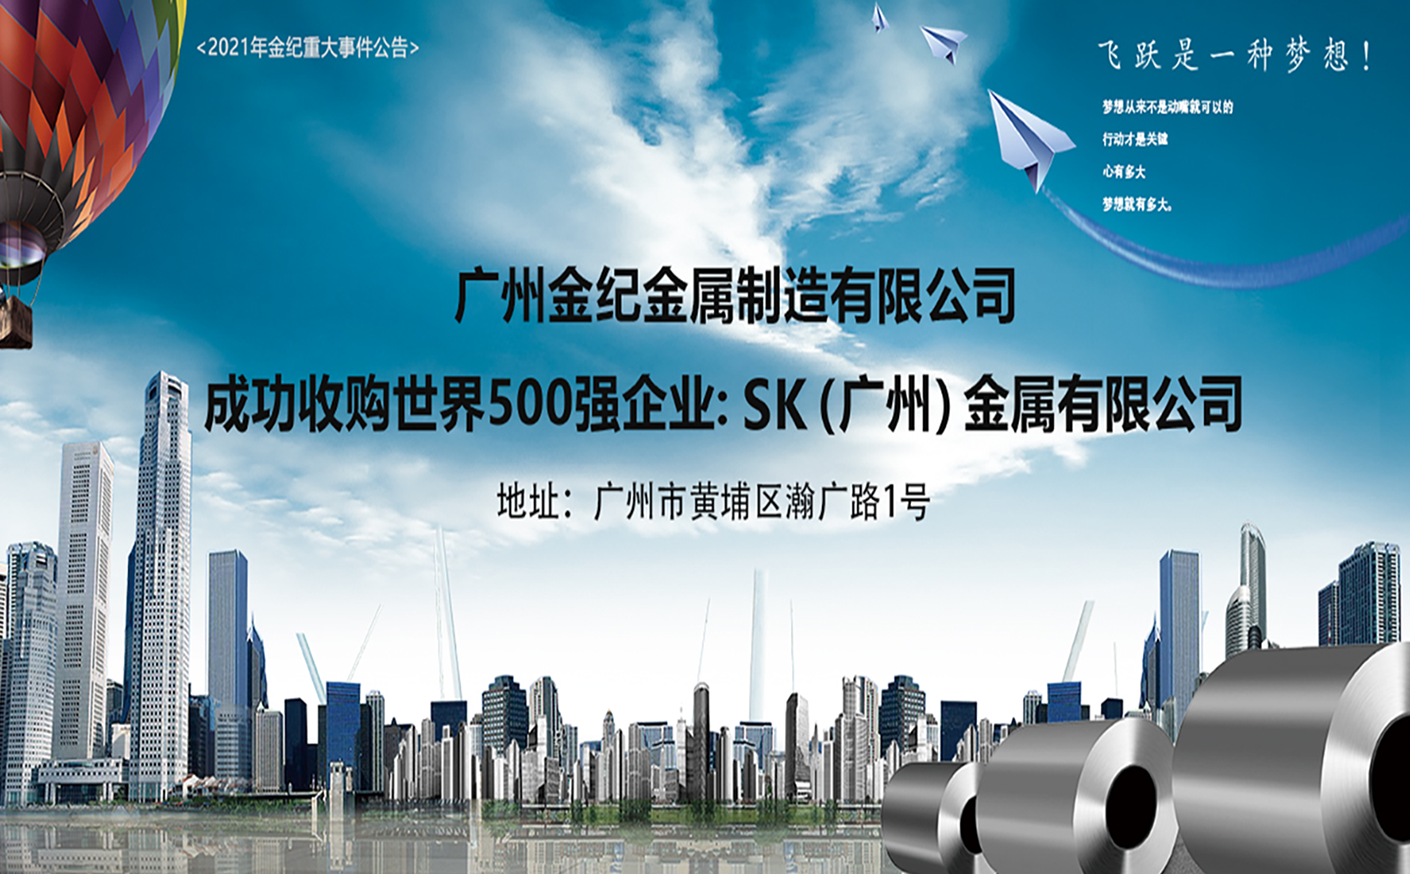 Guangzhou Kinki Metal Manufacturing Co. Successful Acquisition of a Fortune 500 Company: SK (Guangzhou) Metal Co.